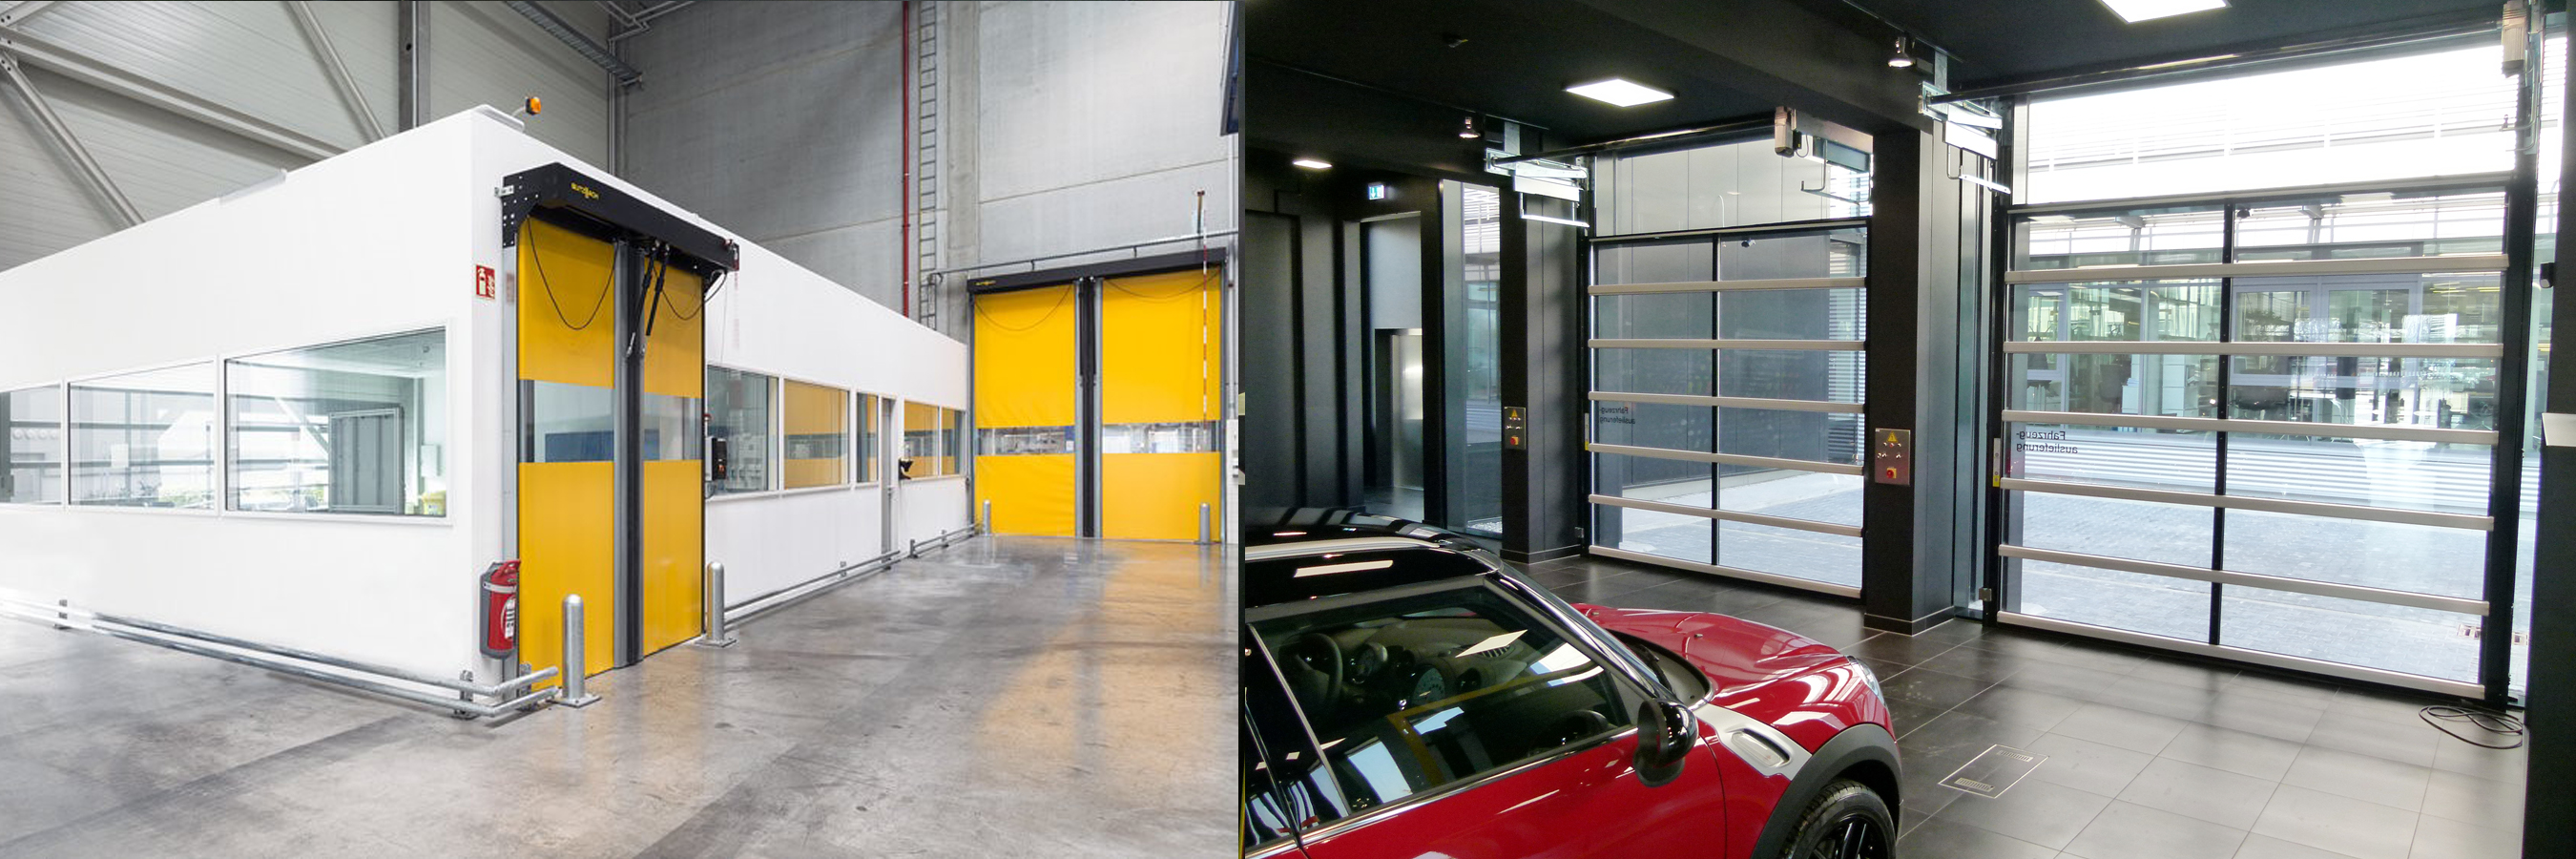 industrial sectional doors